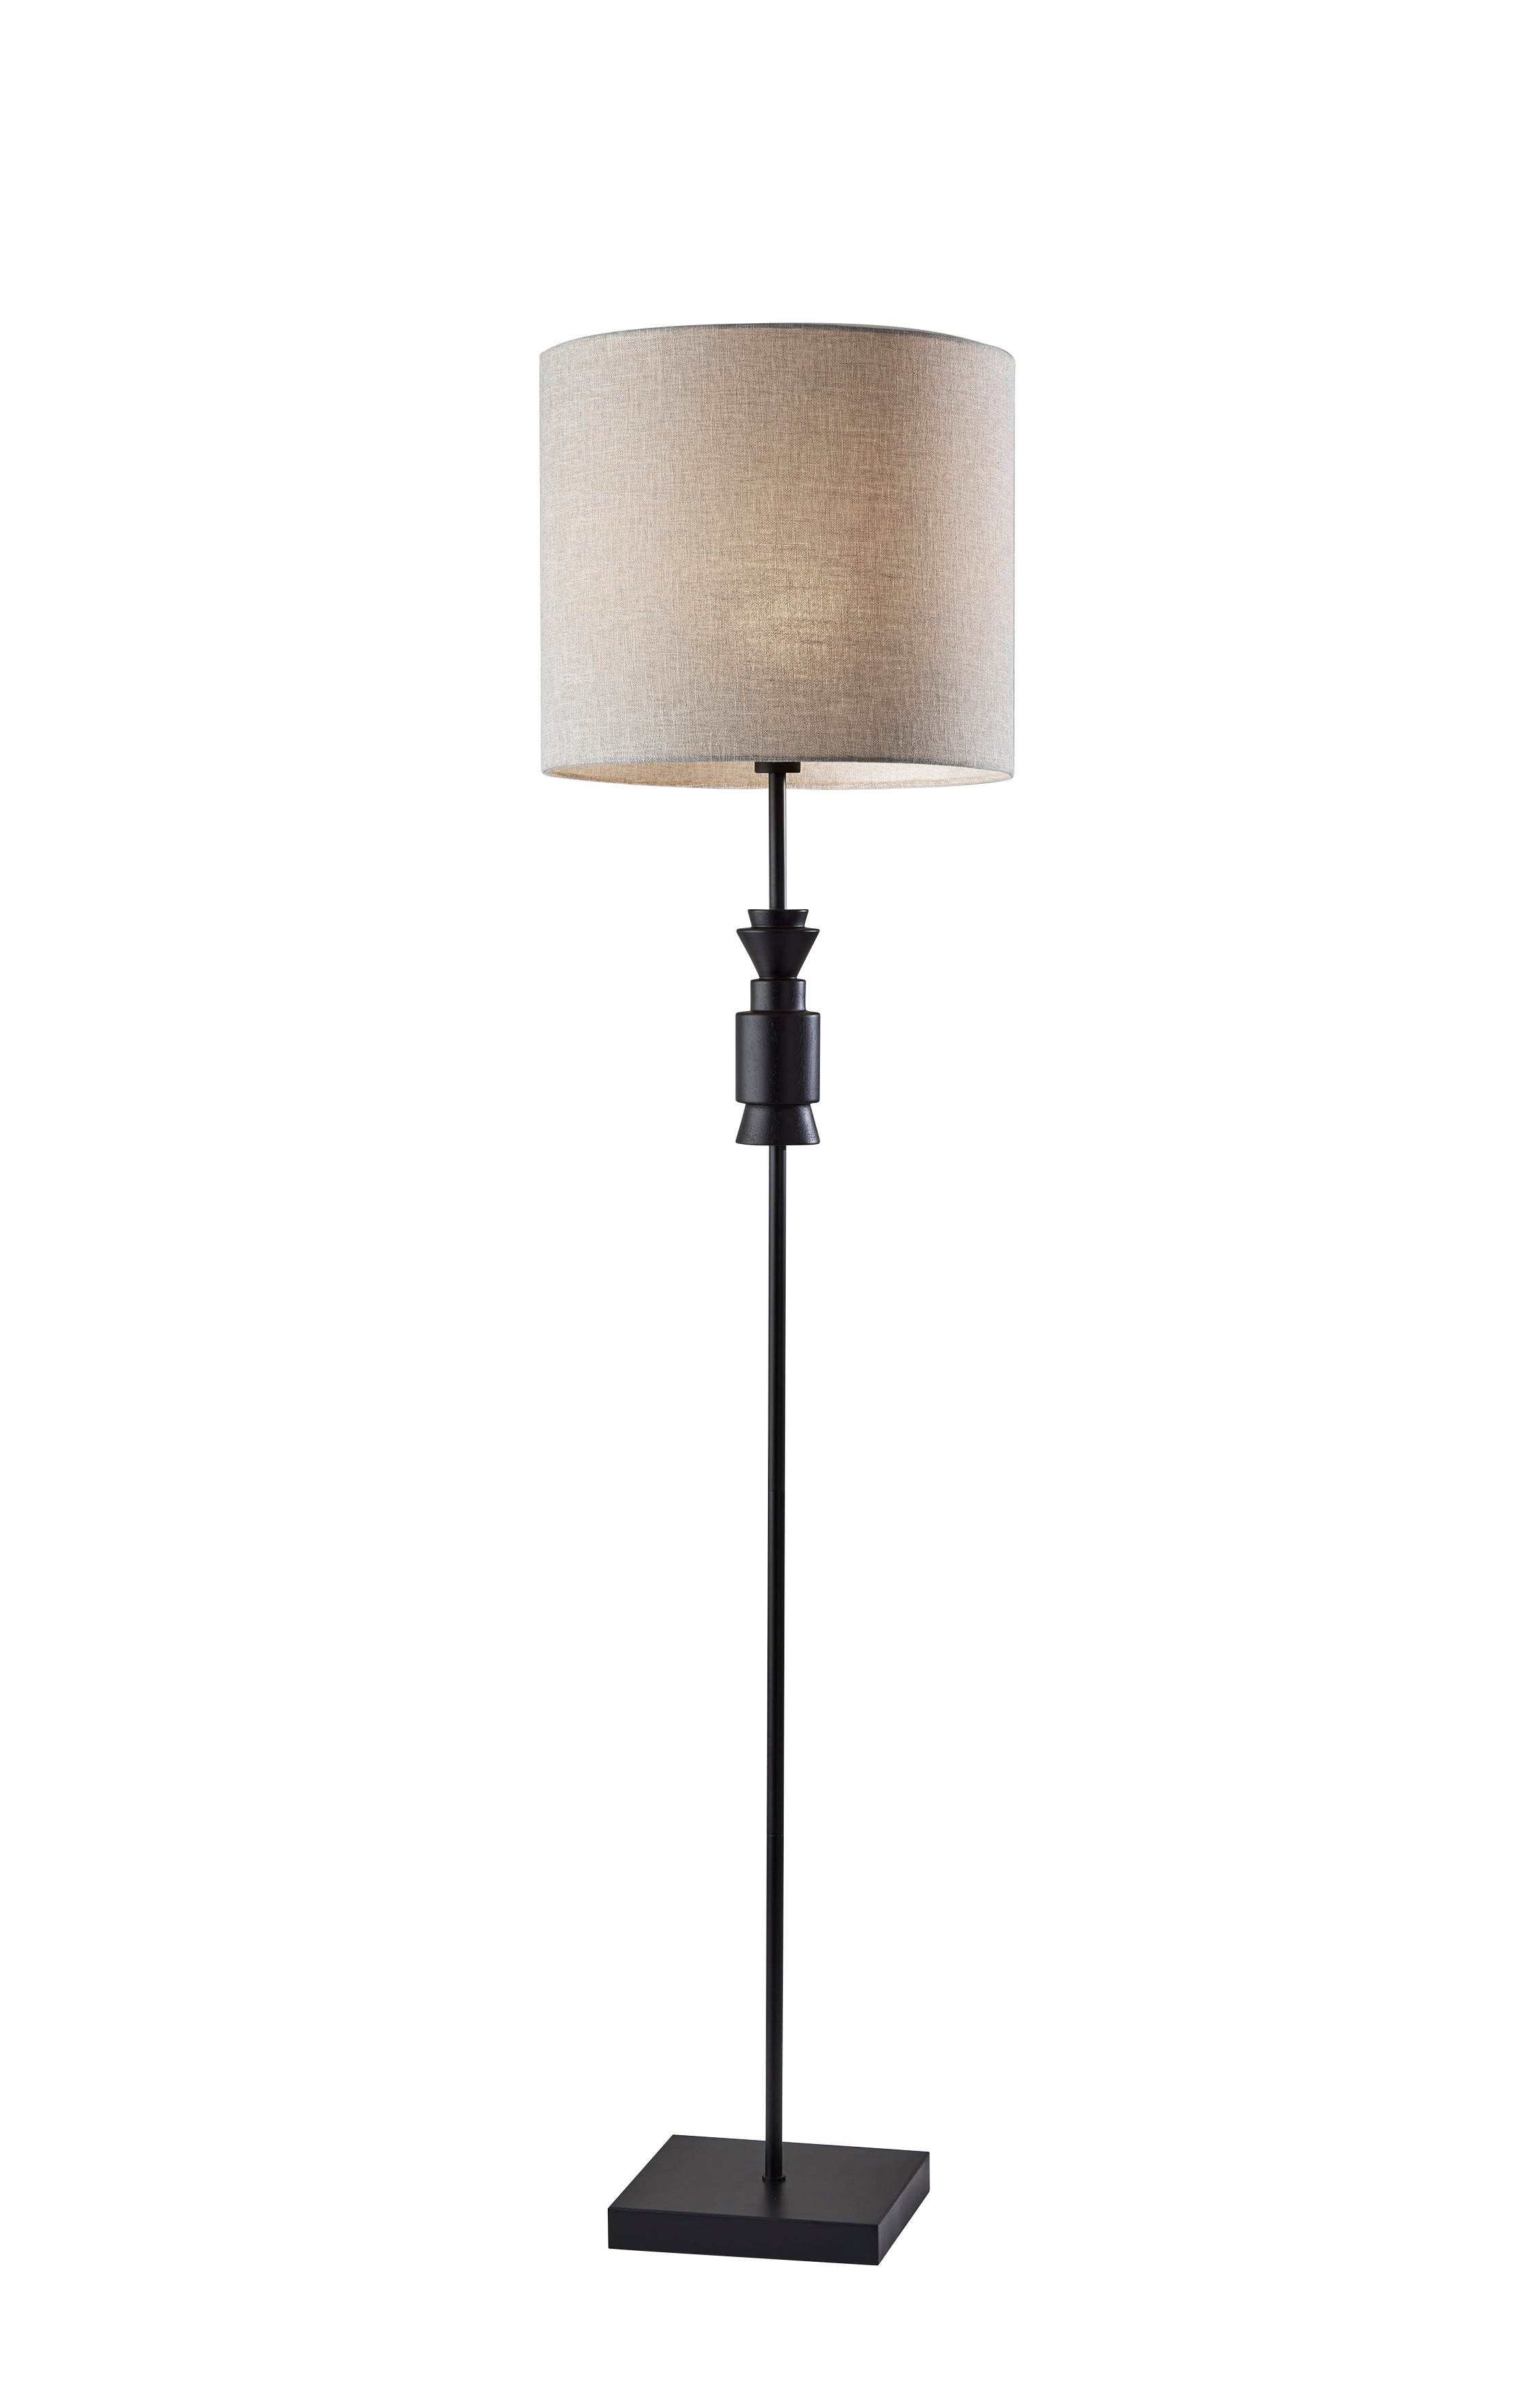 ELTON Lampe sur pied Noir, Bois - 4049-01 | ADESSO